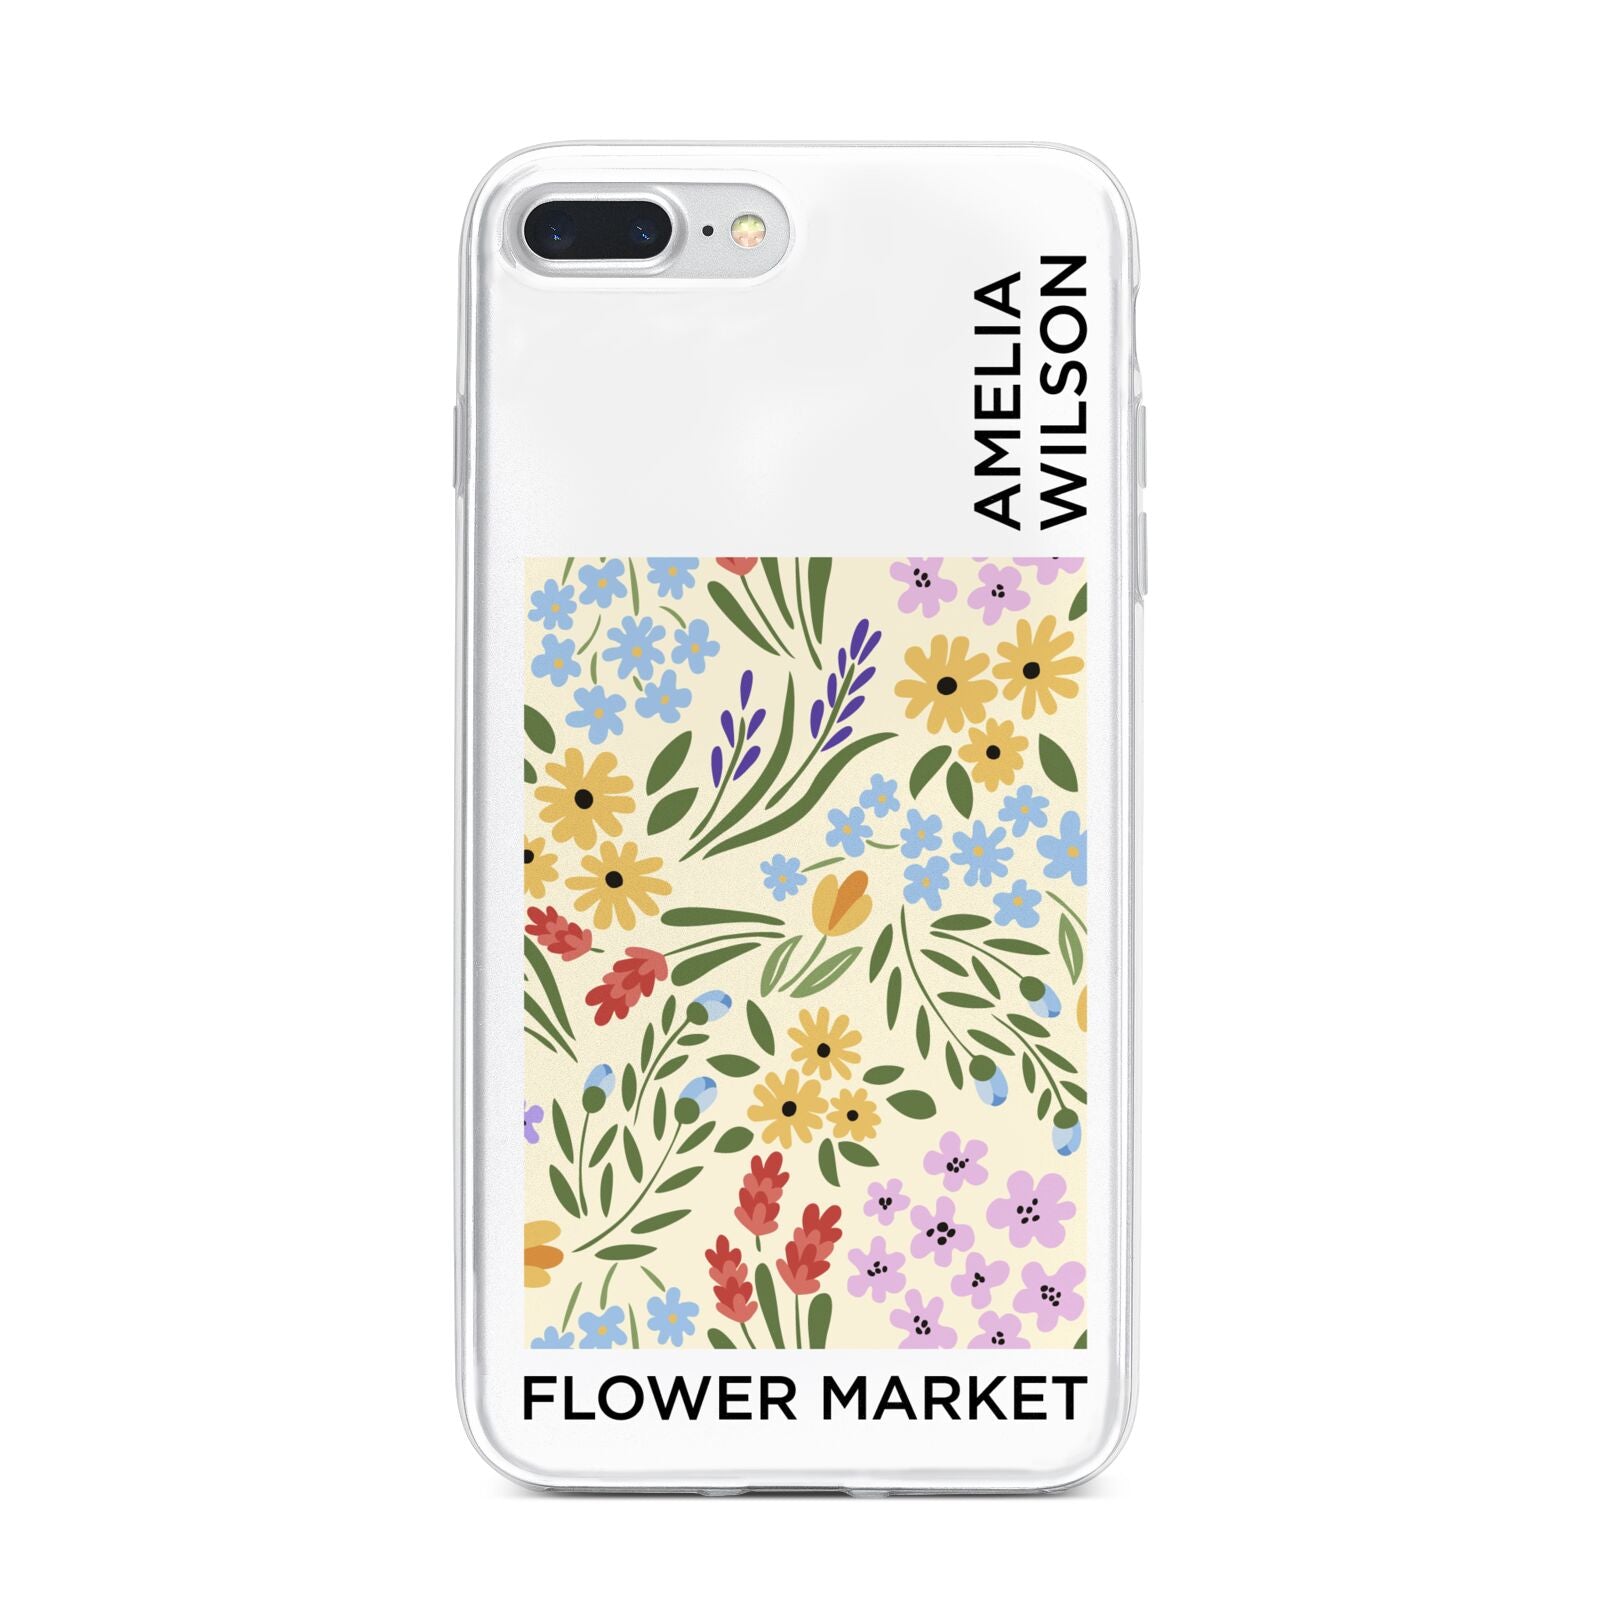 Paris Flower Market iPhone 7 Plus Bumper Case on Silver iPhone